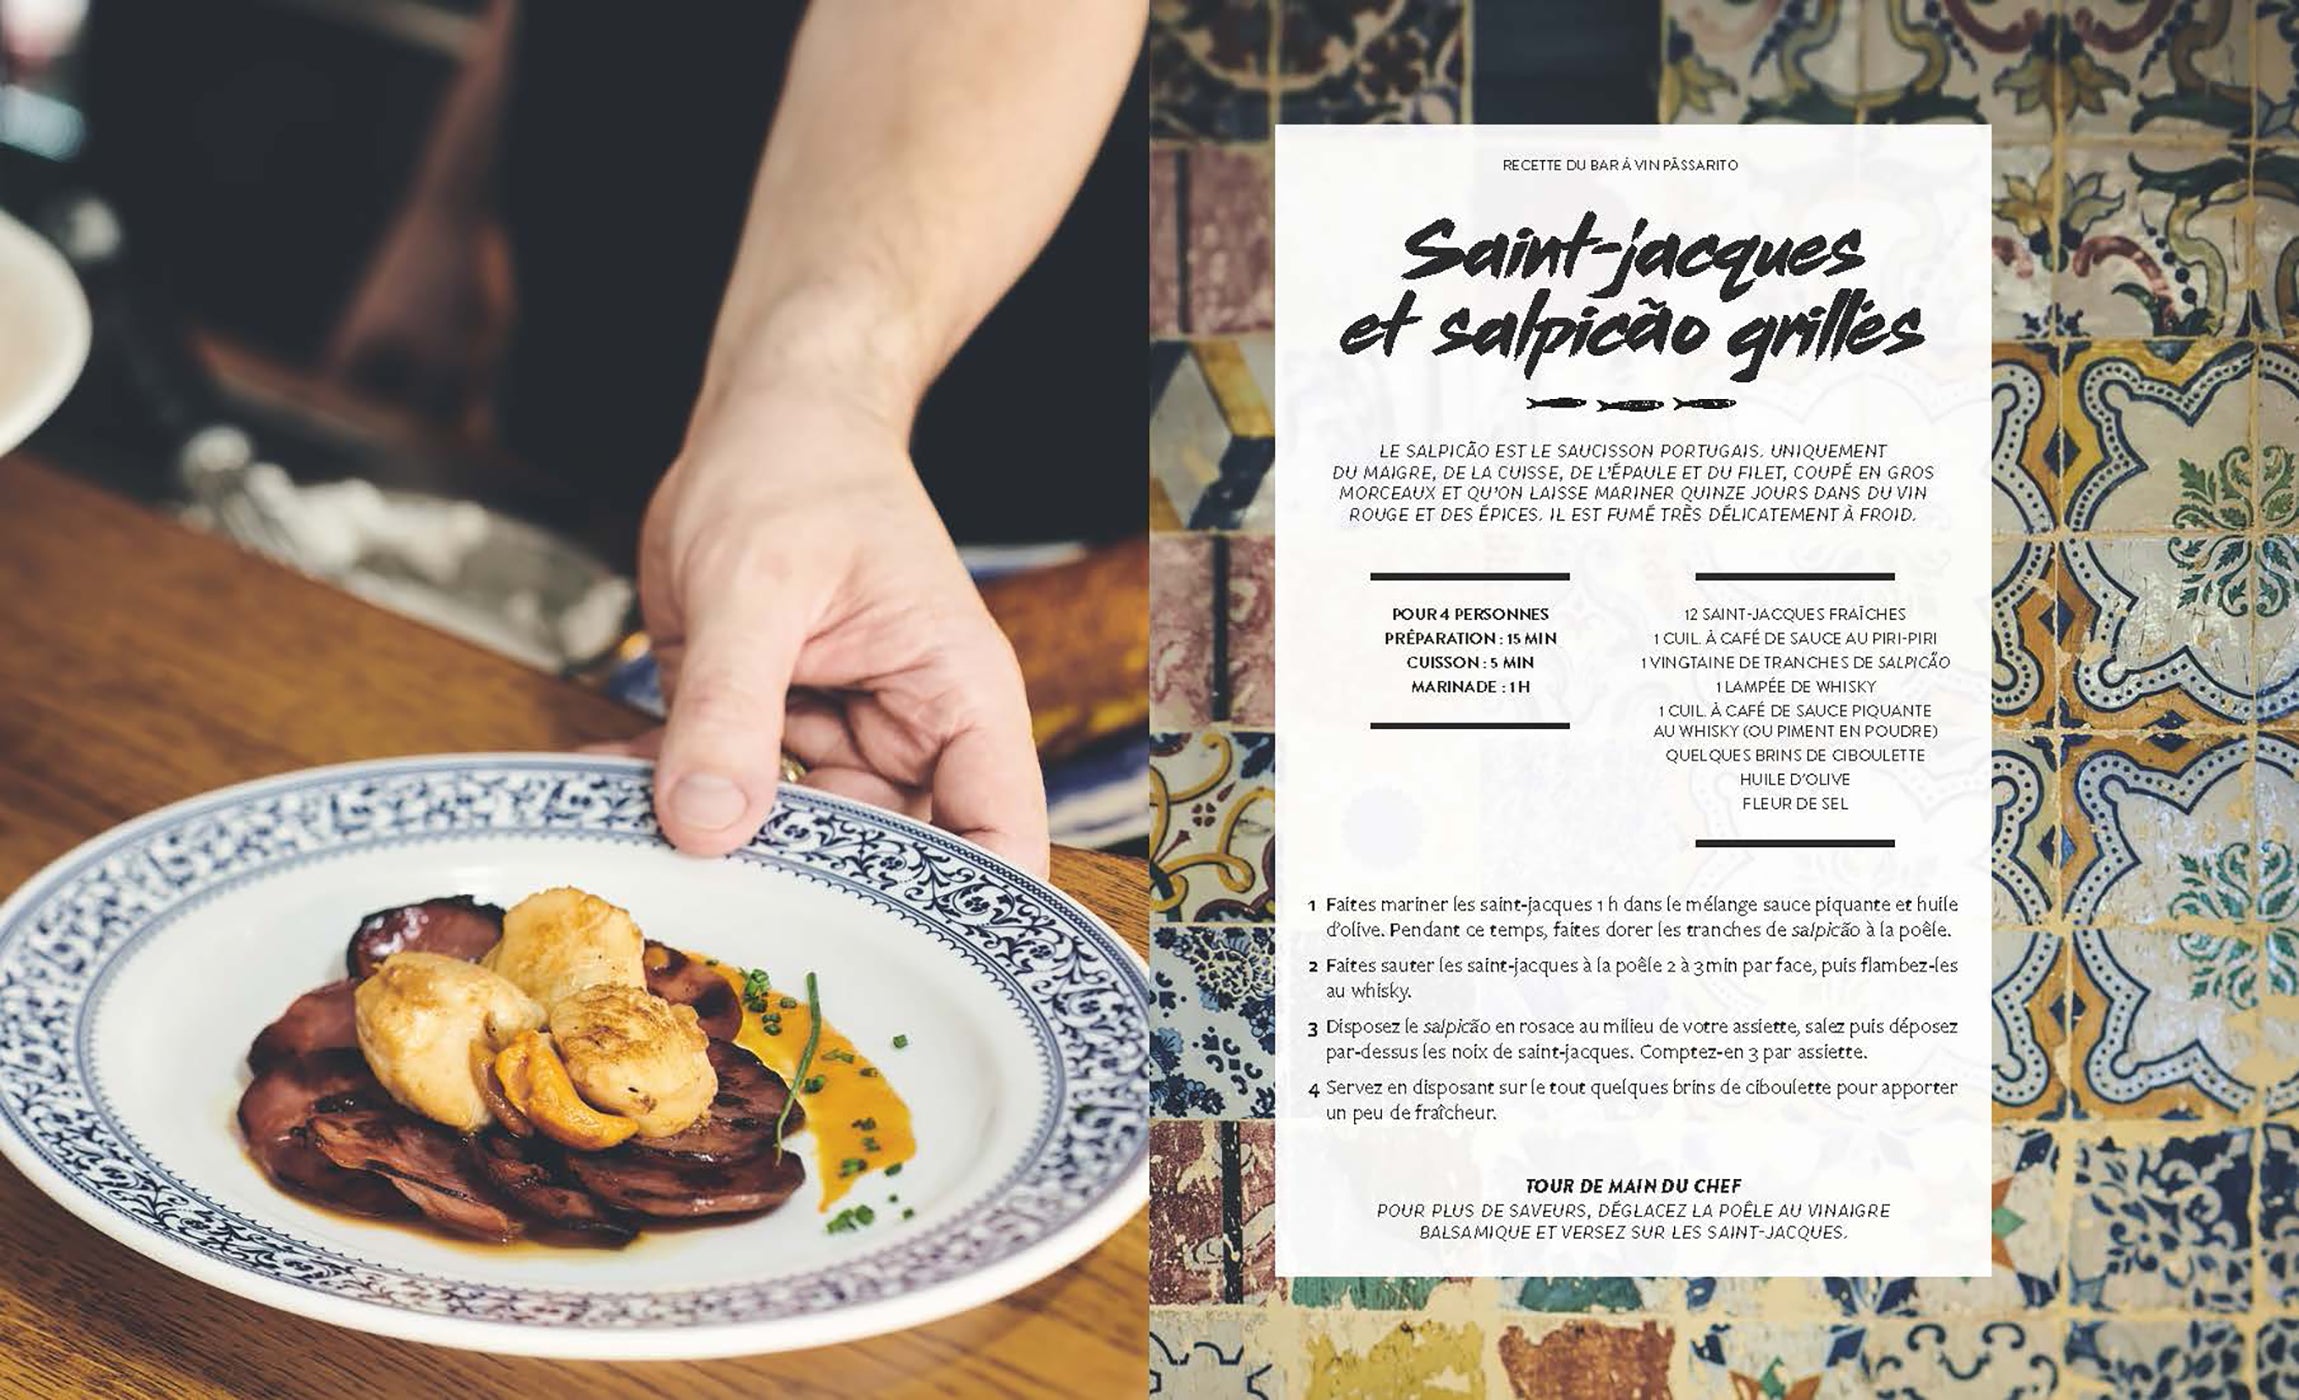 La cuisine Portugaise    - Hachette Ed. - Livre de cuisine - 